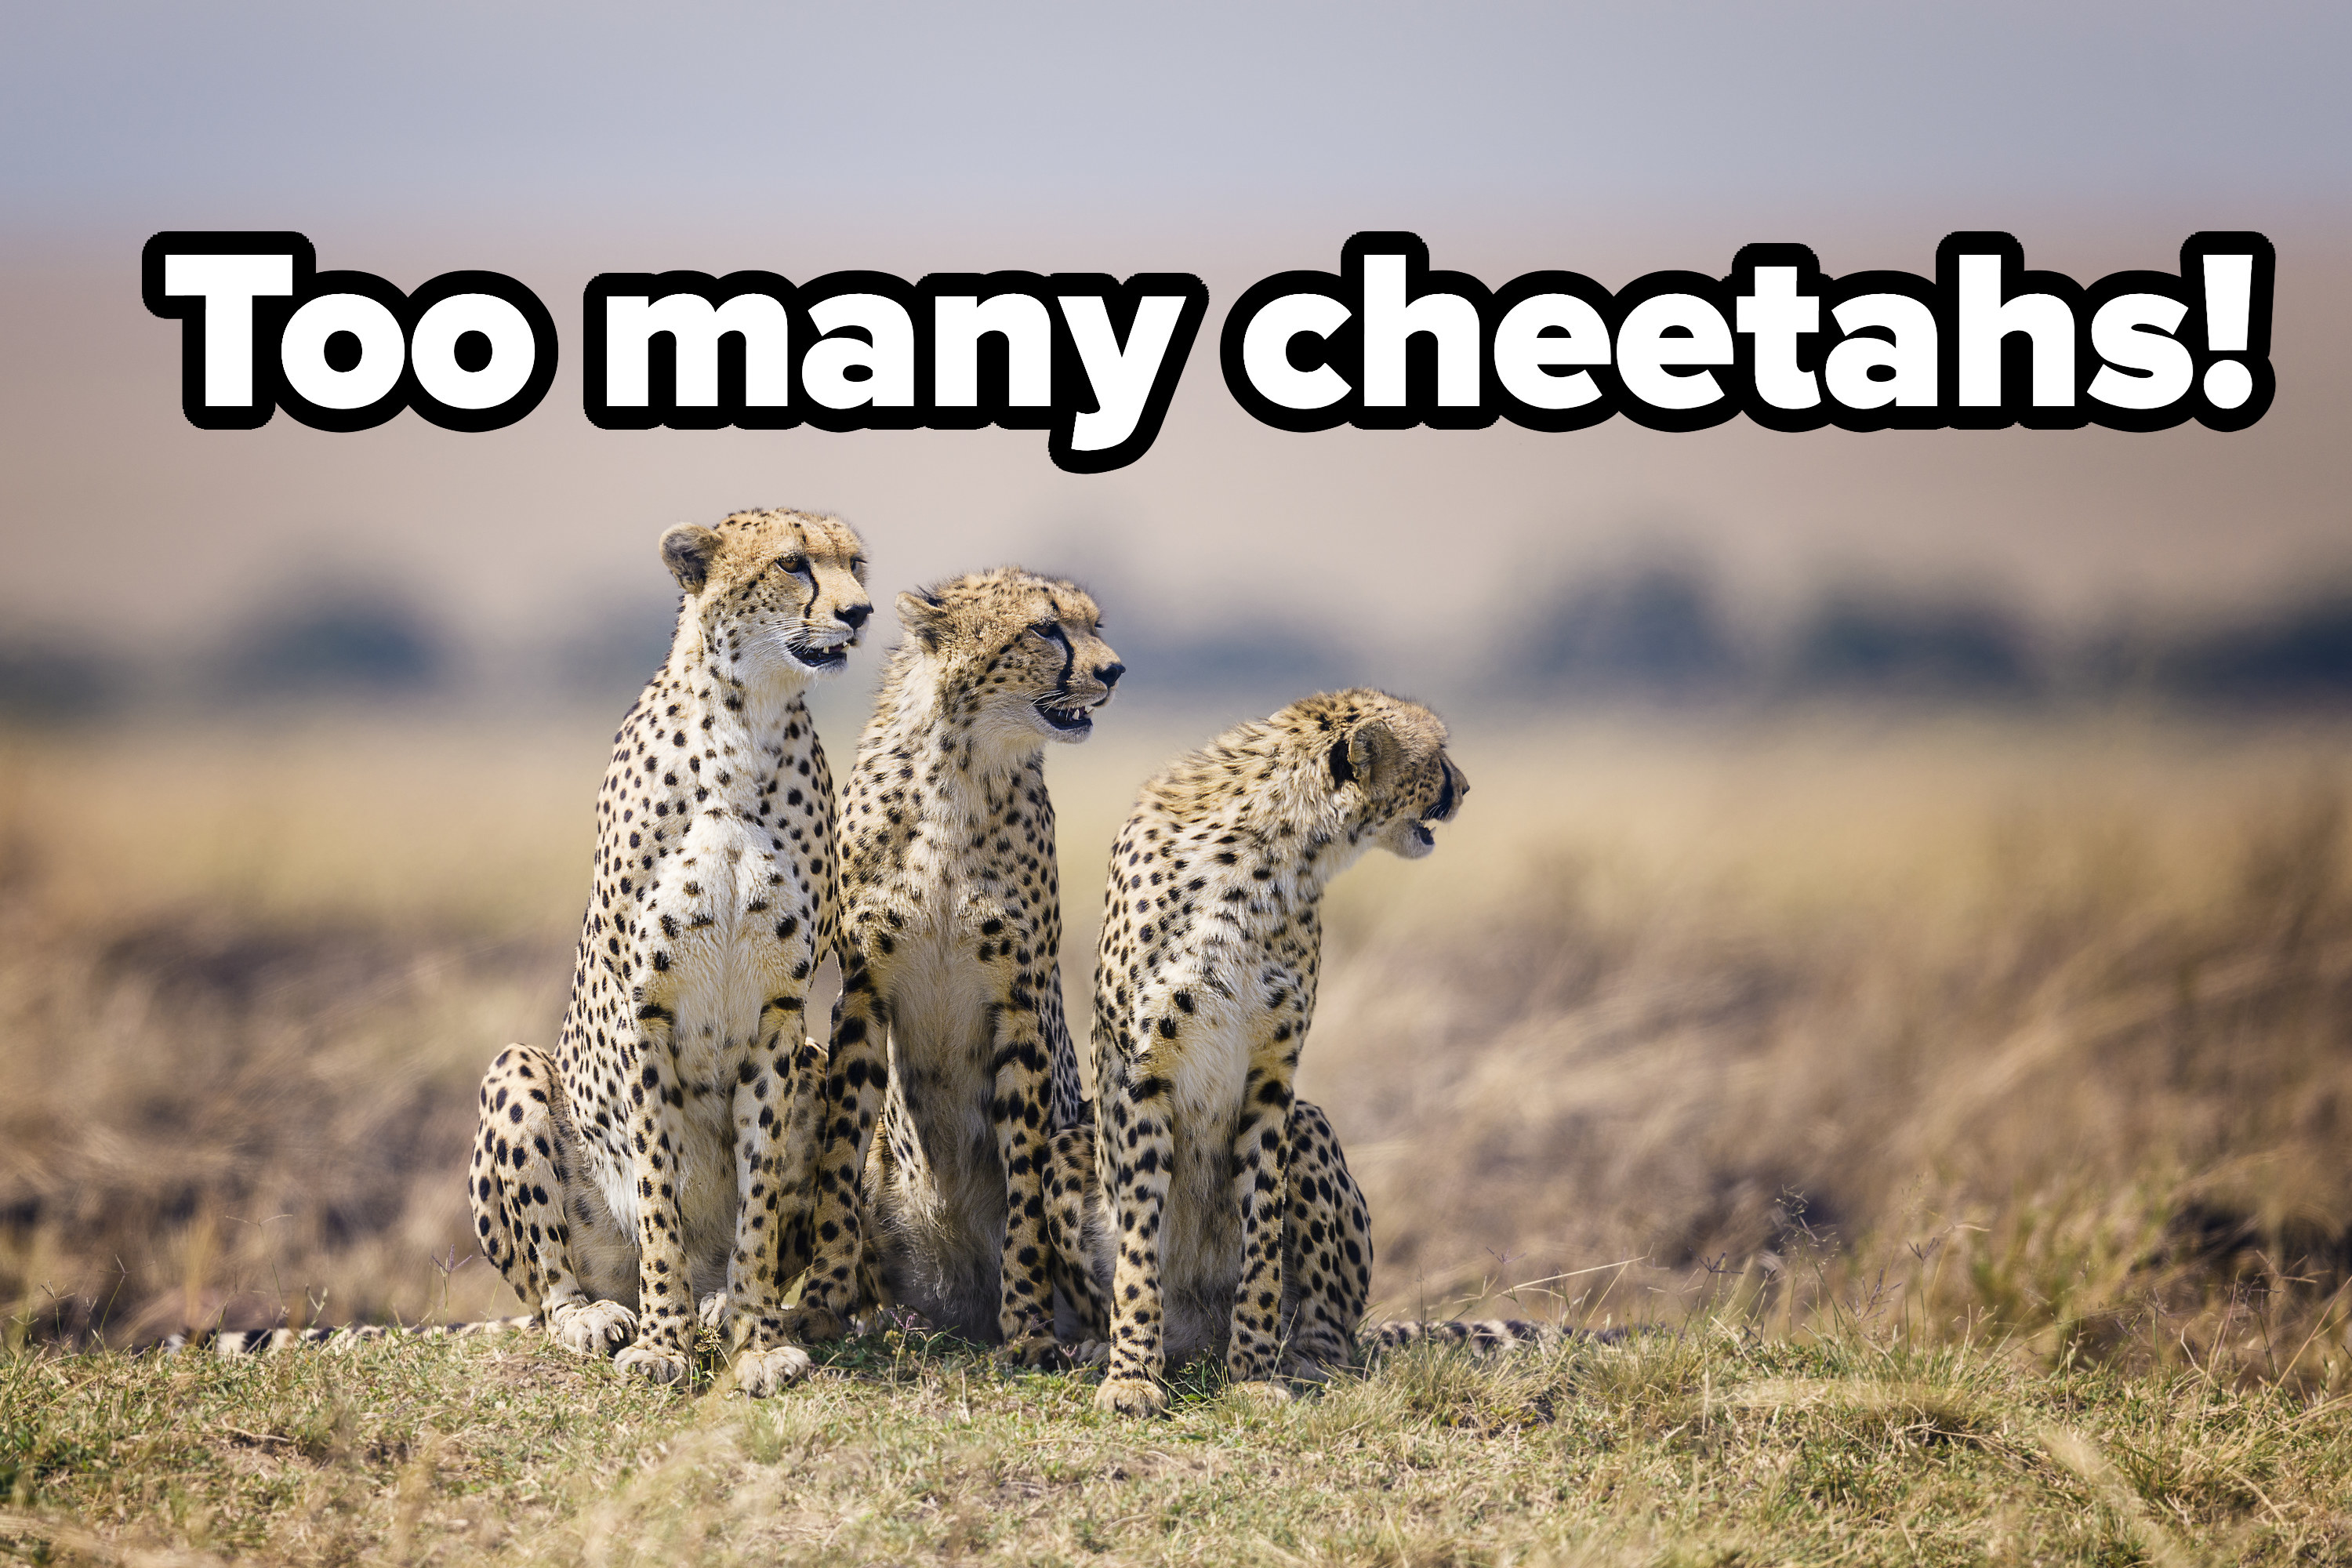 Too many cheetahs!